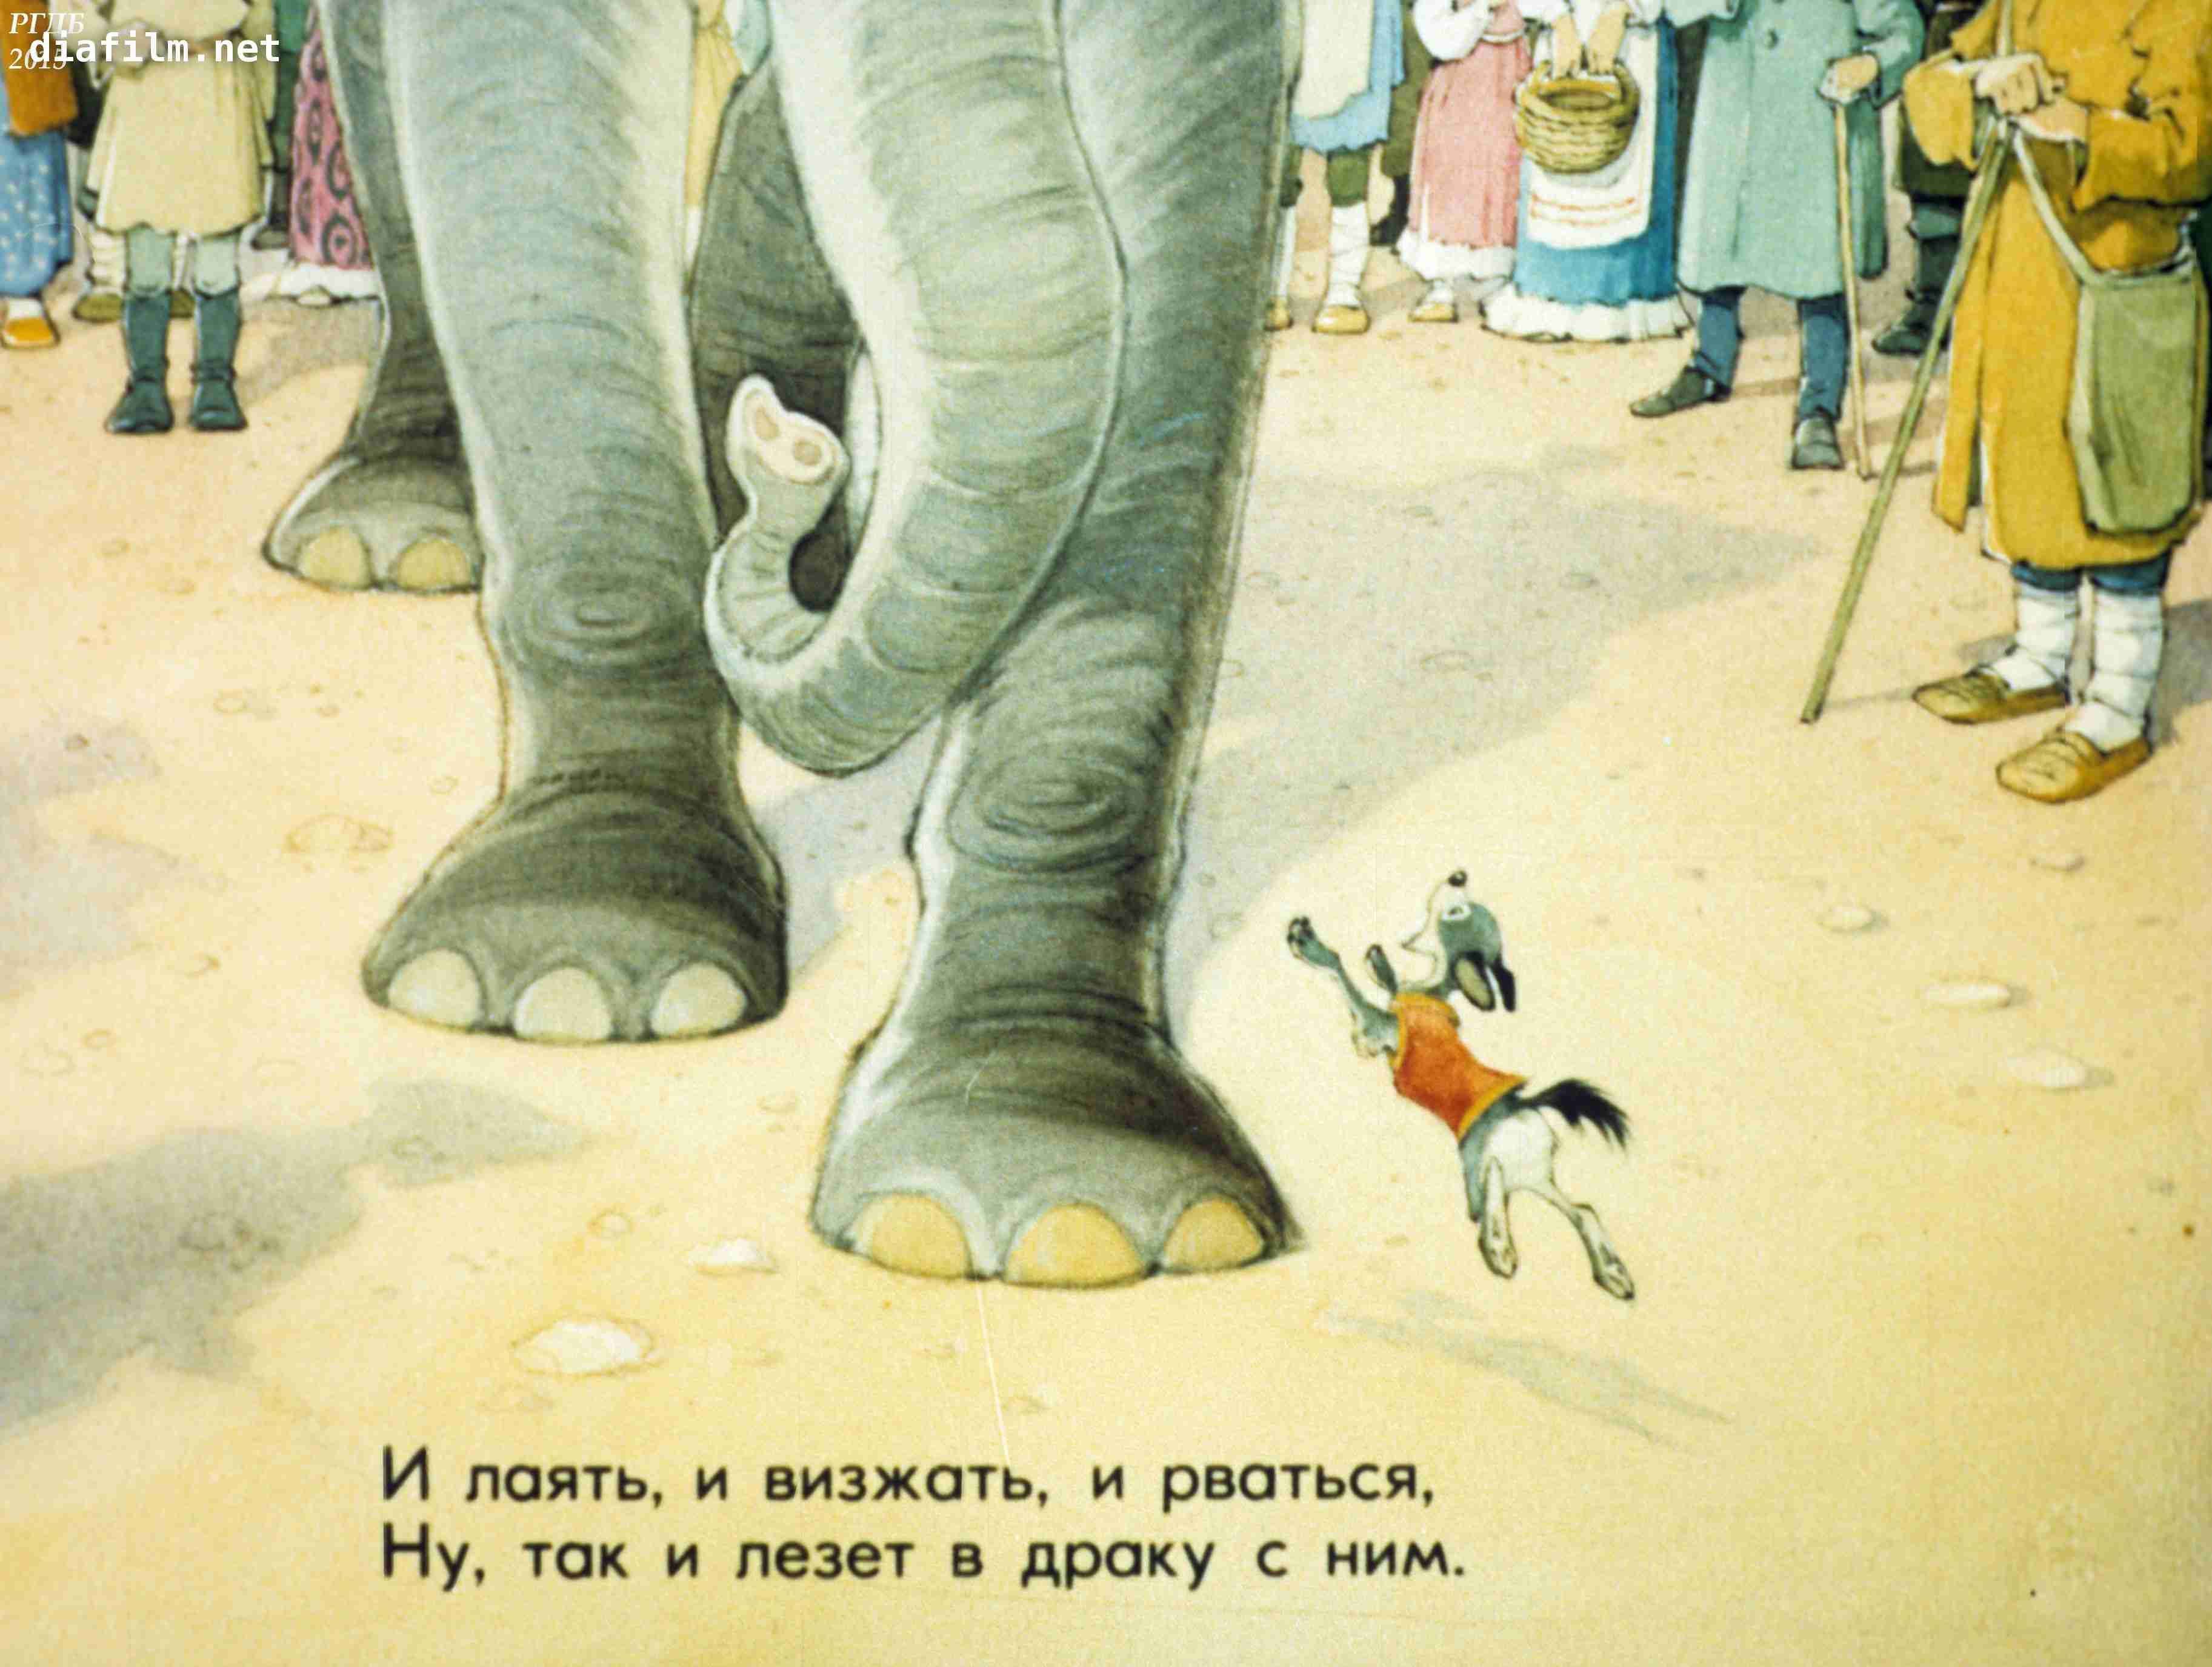 Моська крылова читать. Басня слон и моська Крылов. Моська лает на слона. 1983 Басни слон и моська. Басня Крылова собака и слон.